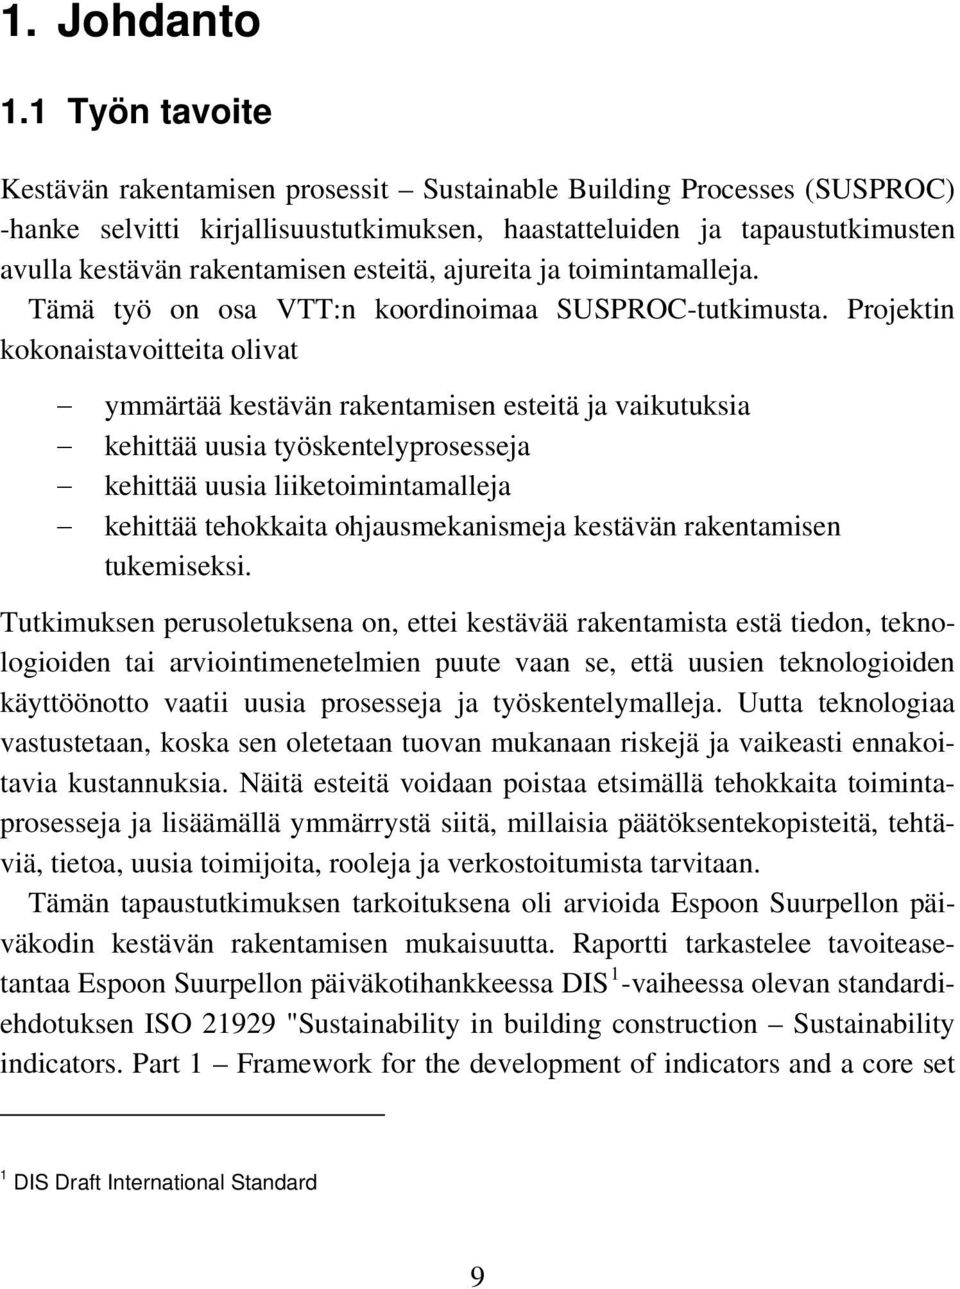 1 Työn tavoite Kestävän rakentamisen prosessit Sustainable Building Processes (SUSPROC) -hanke selvitti kirjallisuustutkimuksen, haastatteluiden ja tapaustutkimusten avulla kestävän rakentamisen